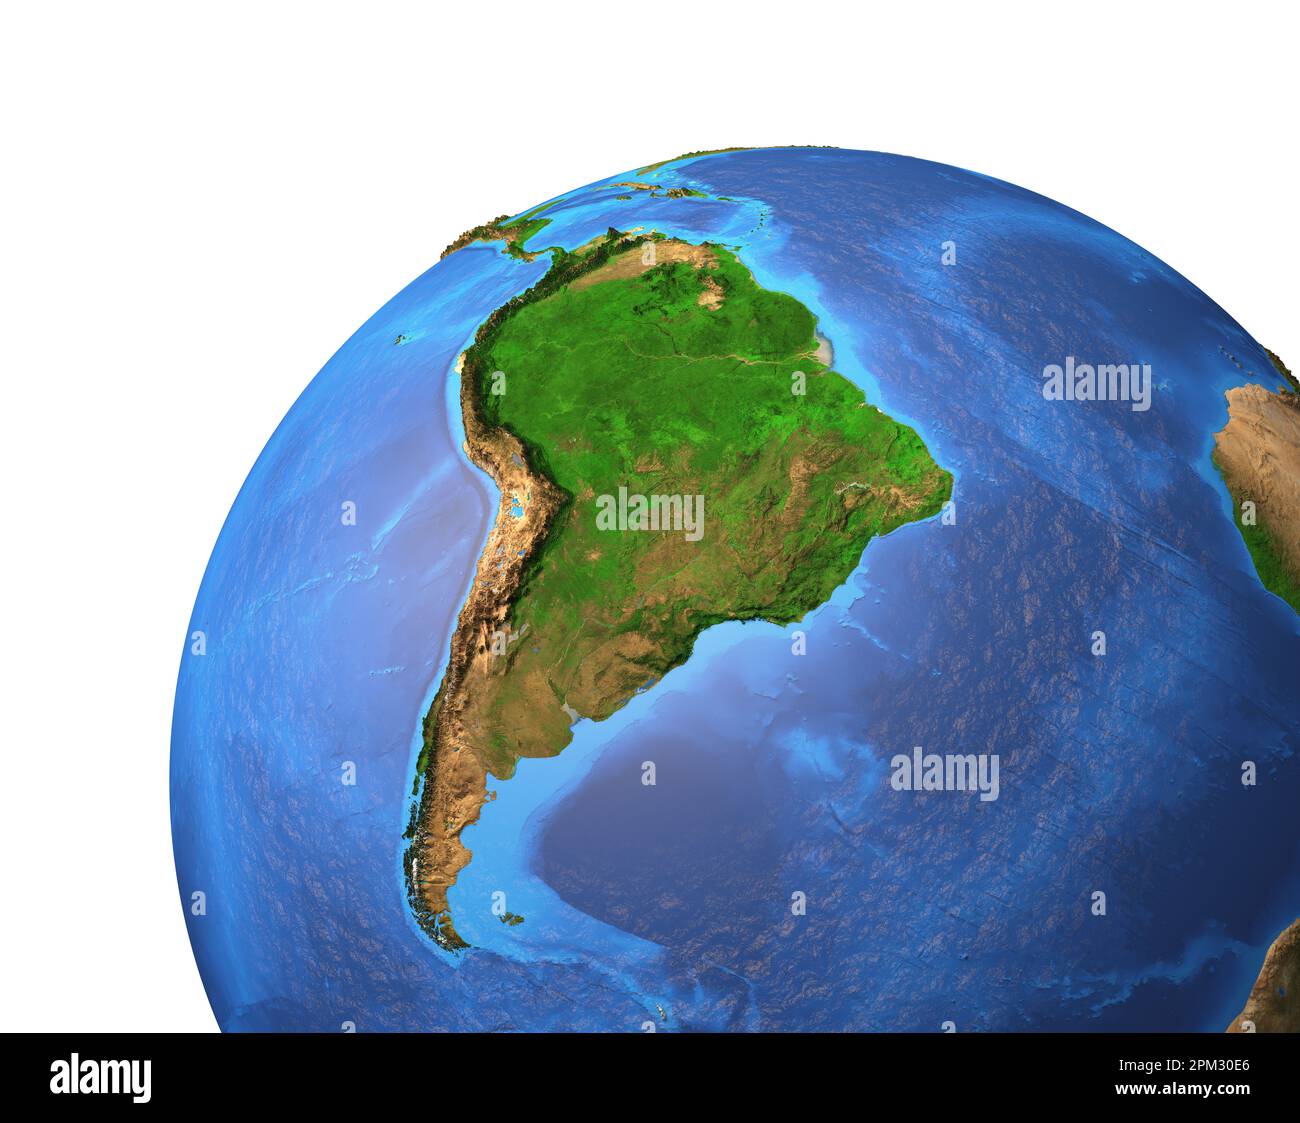 Hochauflösende Satellitenansicht des Planeten Erde mit Fokus auf Südamerika, Brasilien und Amazonas Rainforest – Elemente, die von der NASA bereitgestellt werden Stockfoto